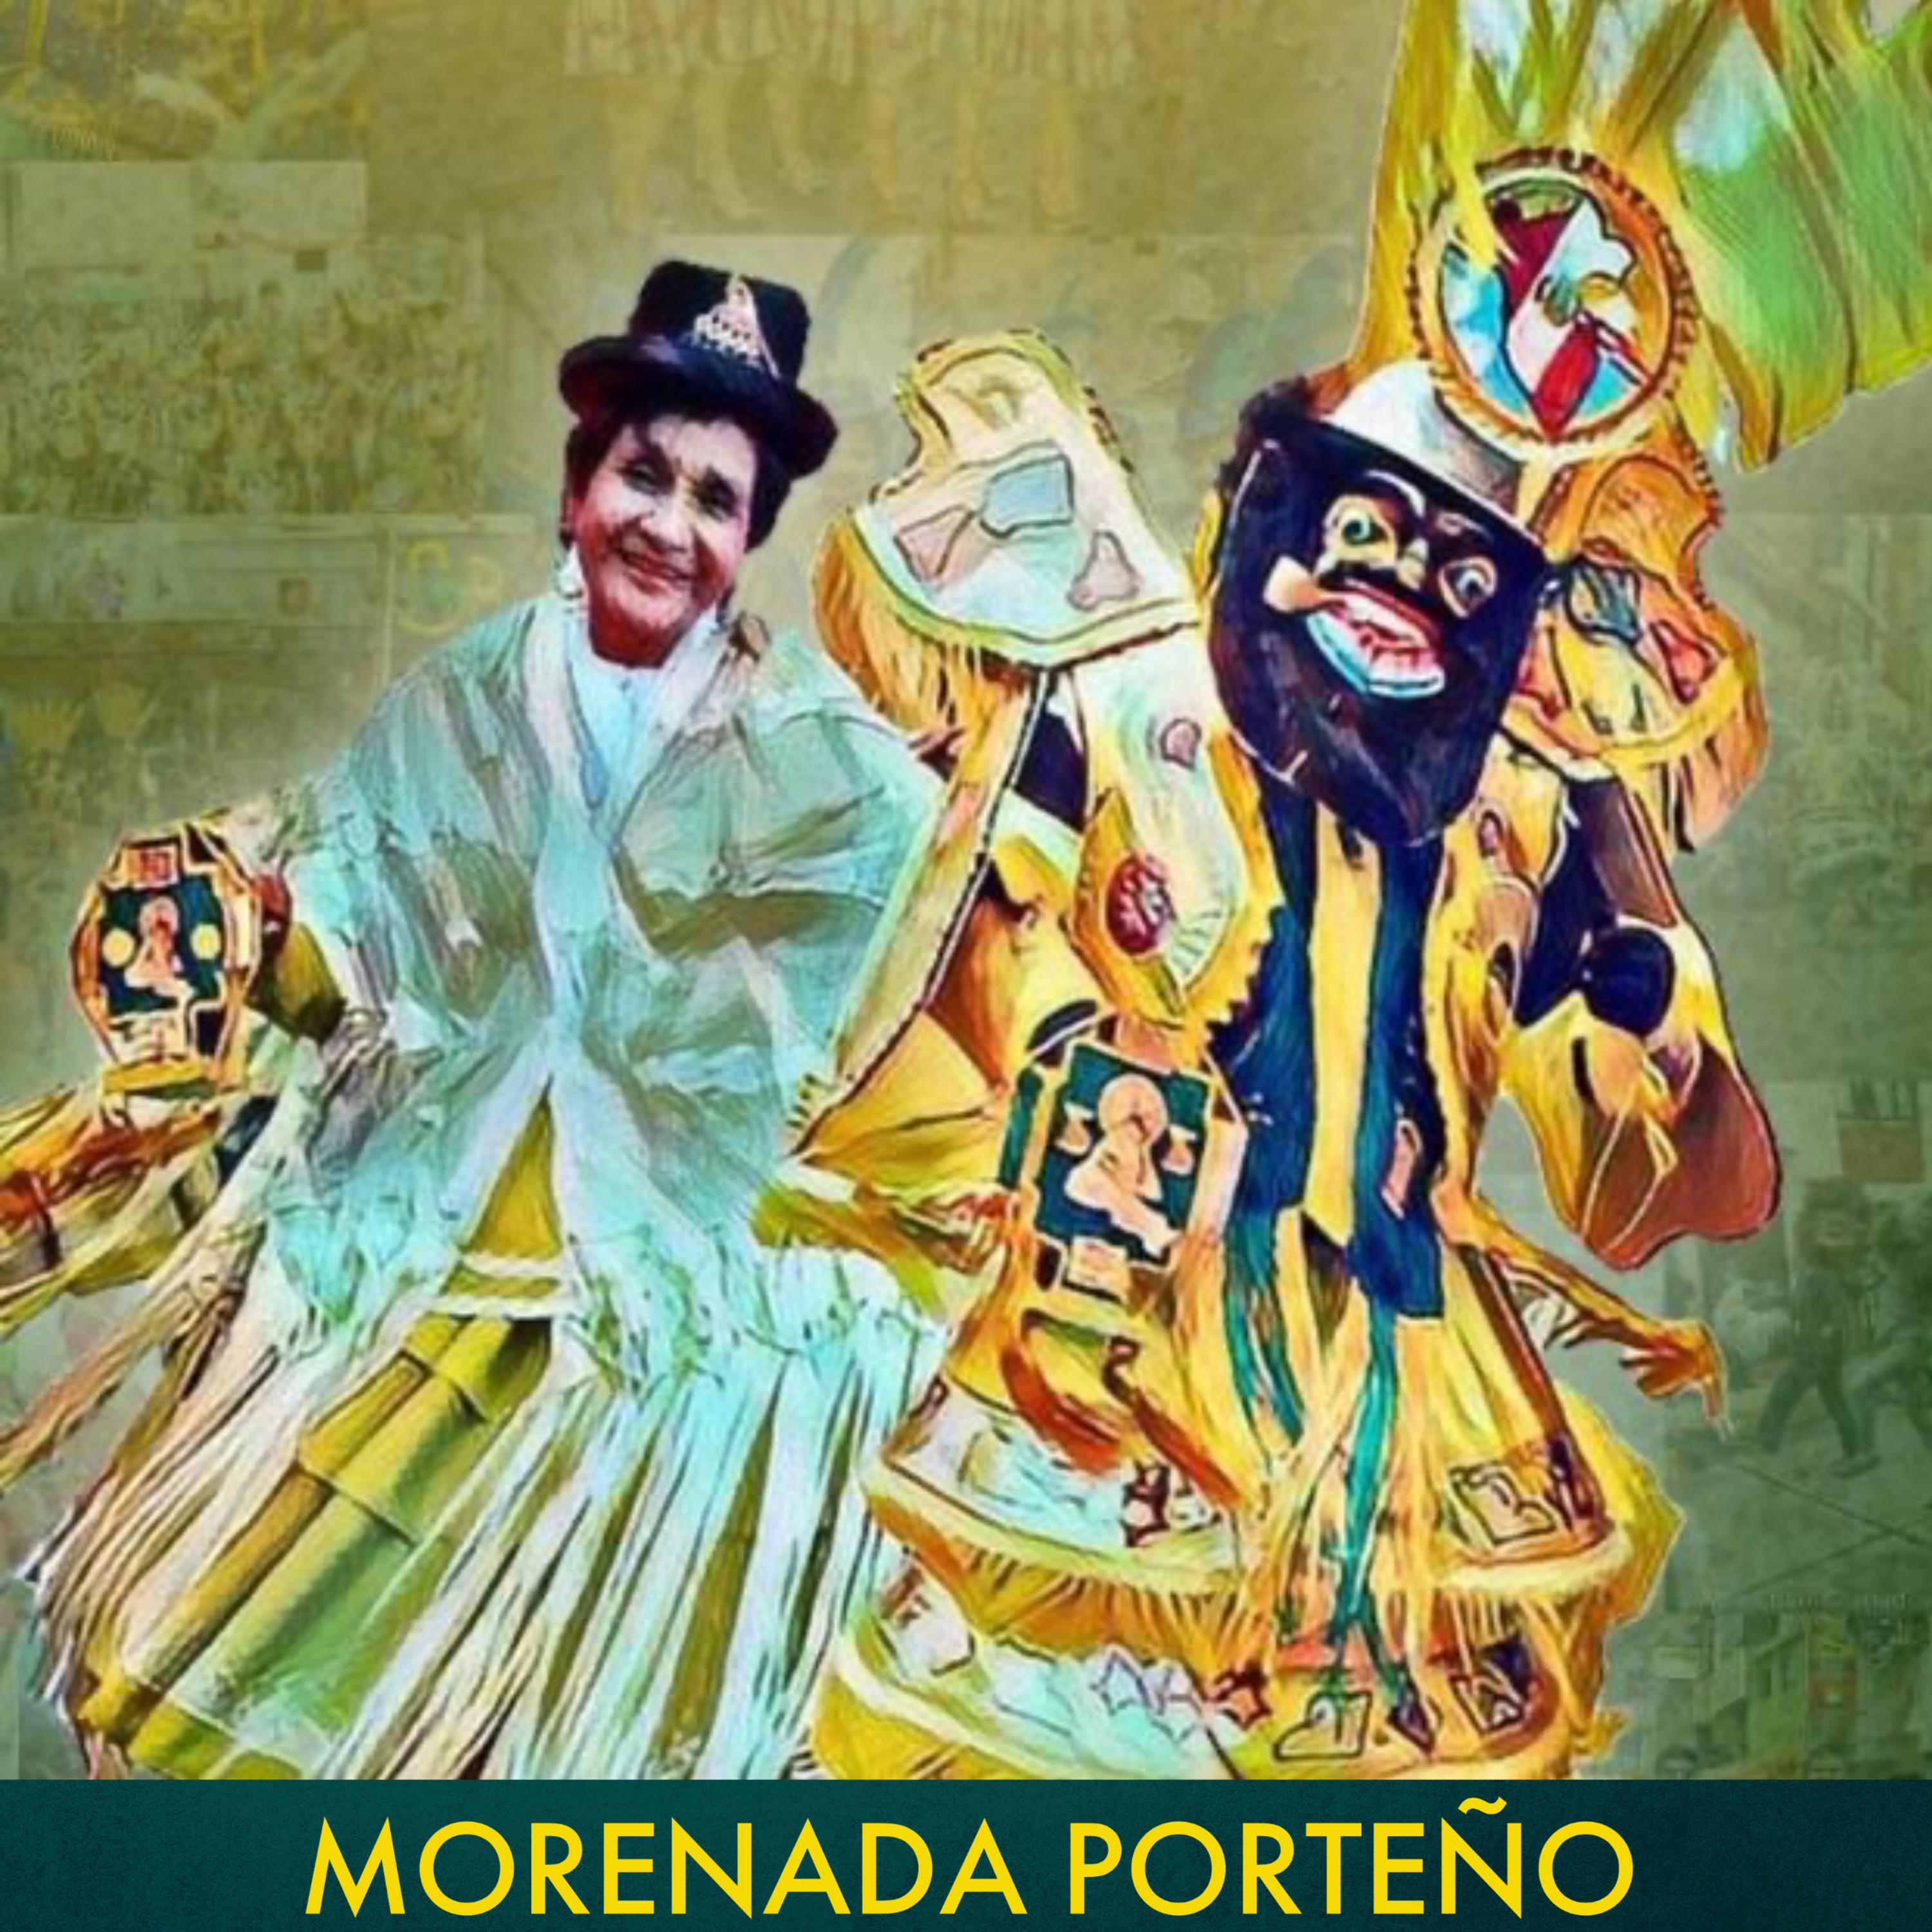 Morenada Porteño - Porteño Si Señor